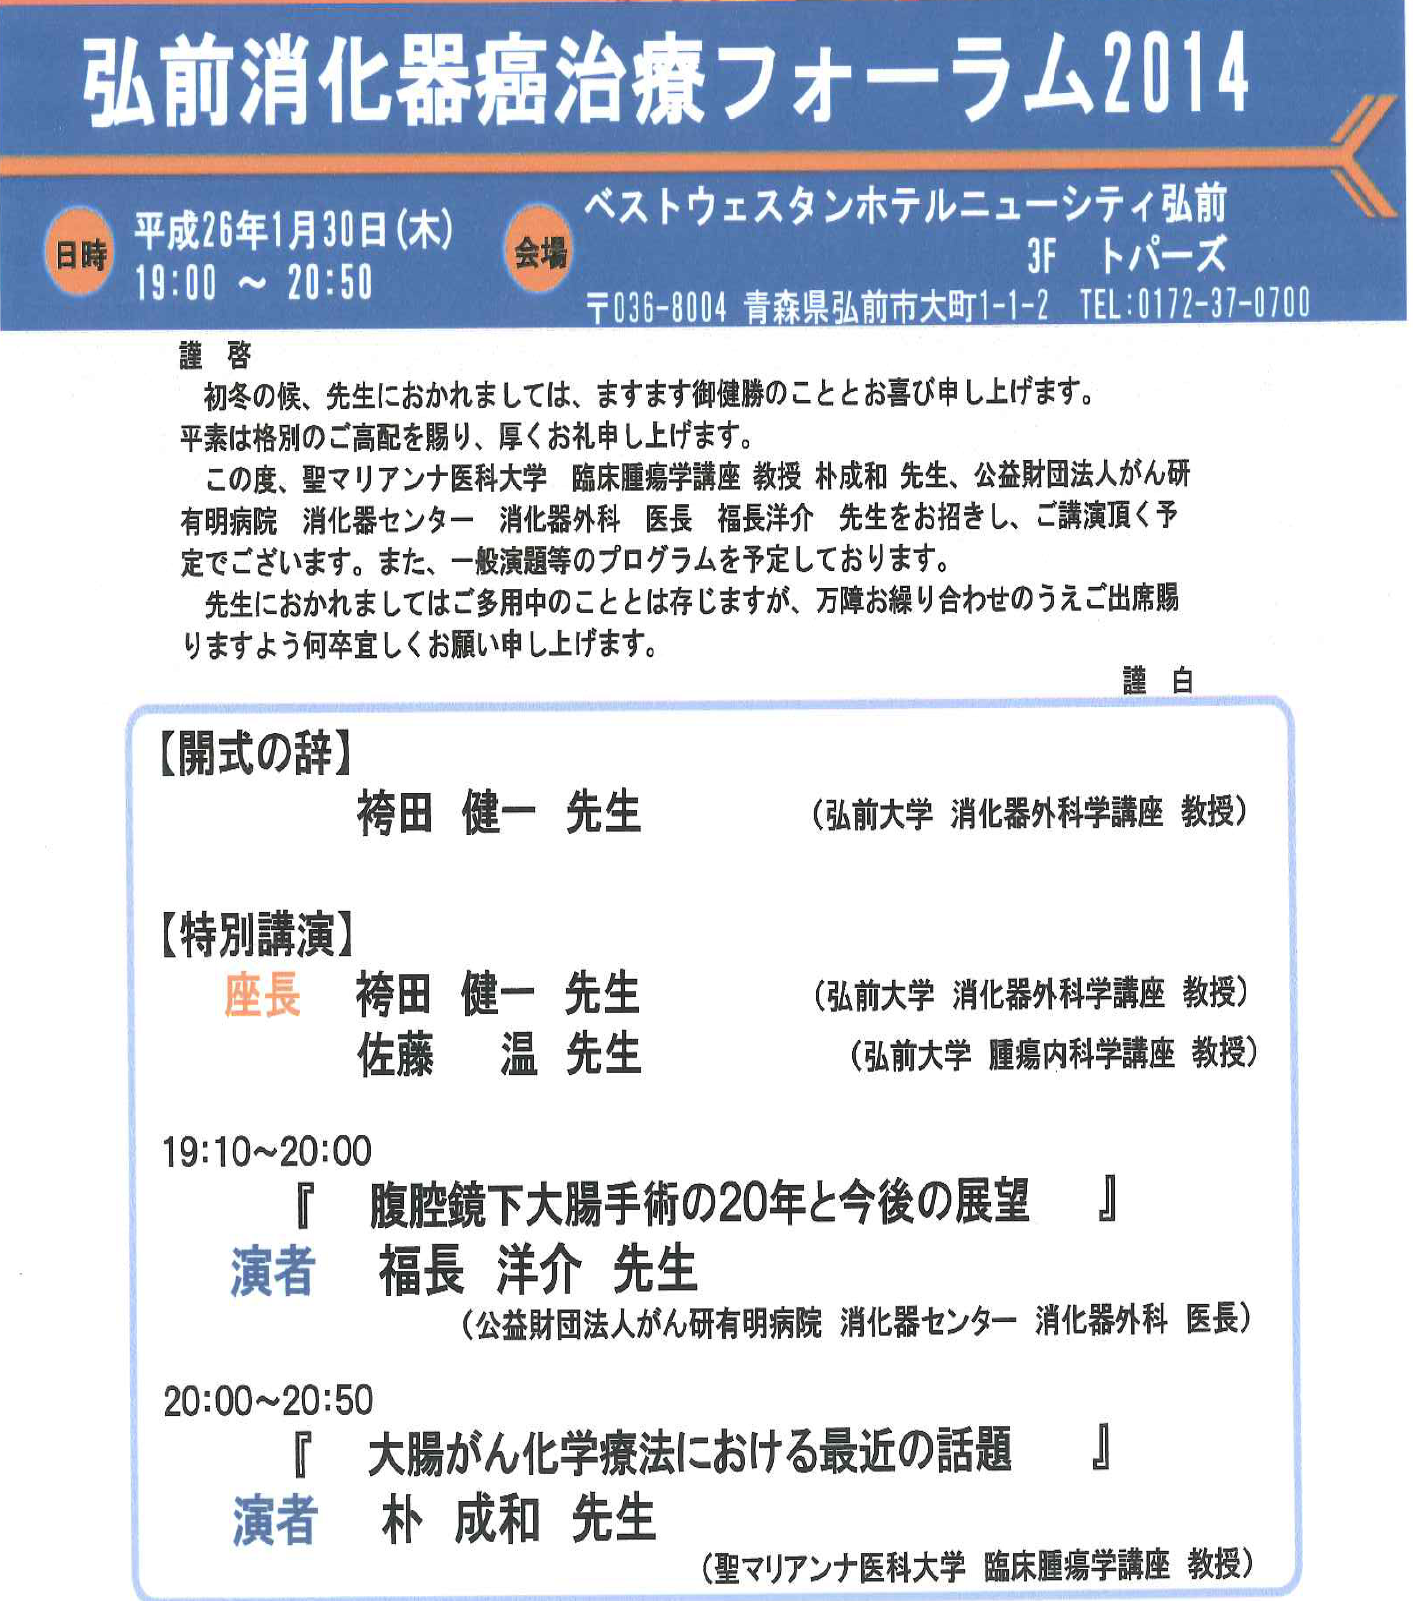 日本消化器癌治療フォーラム2014